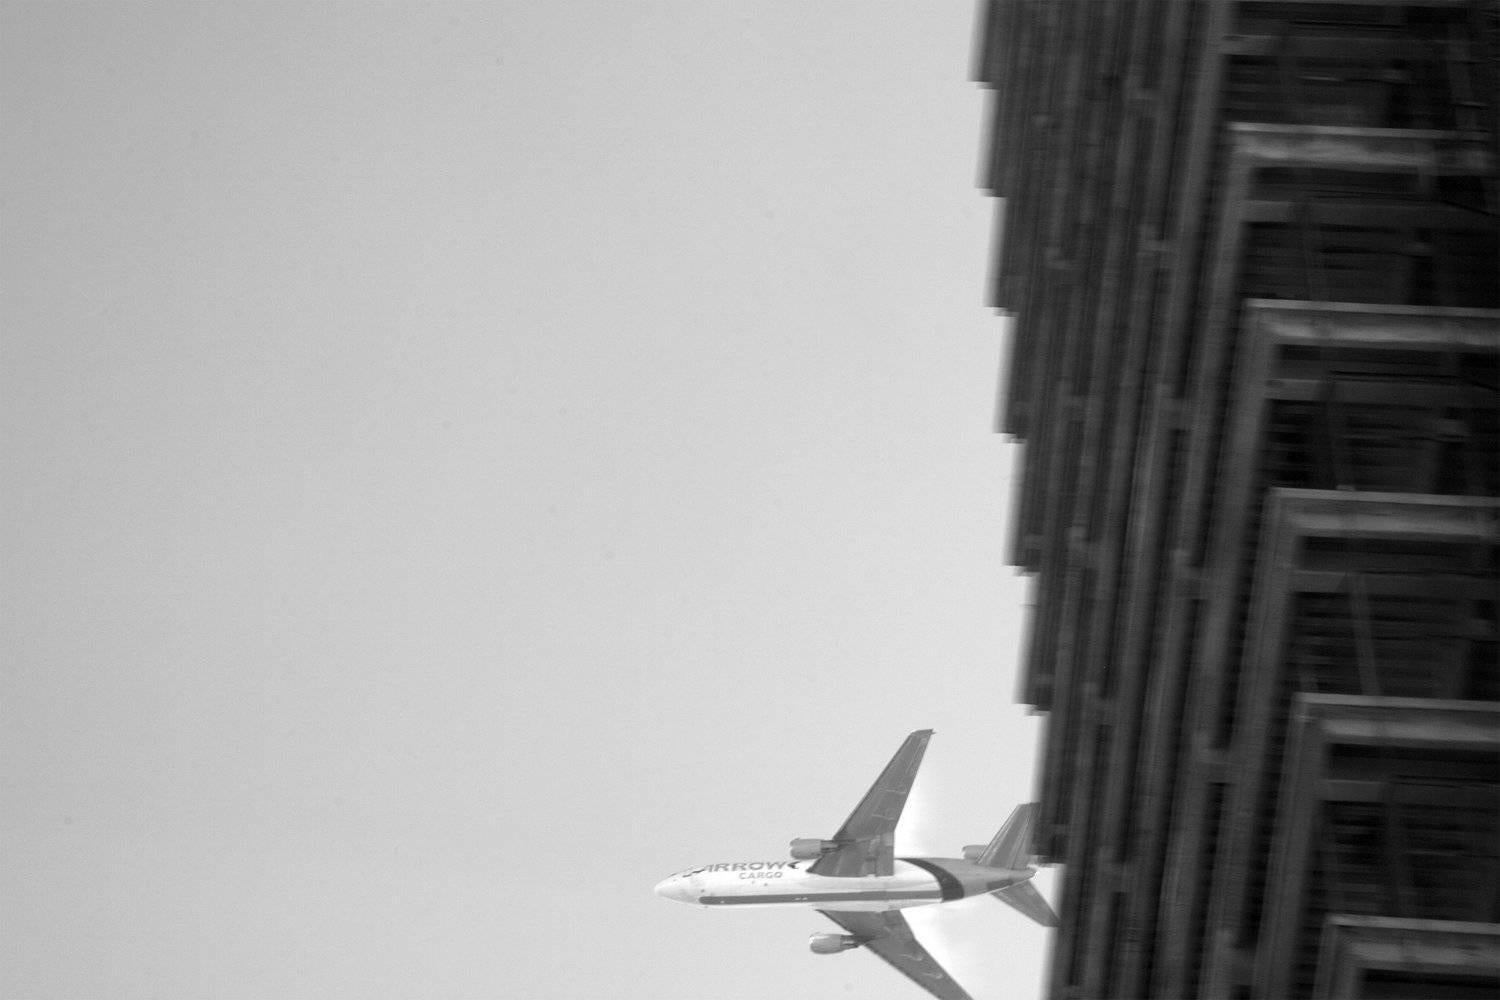 Brian Pearson Black and White Photograph - Ascending DC-10 Cargo Jet, Miami, 2010